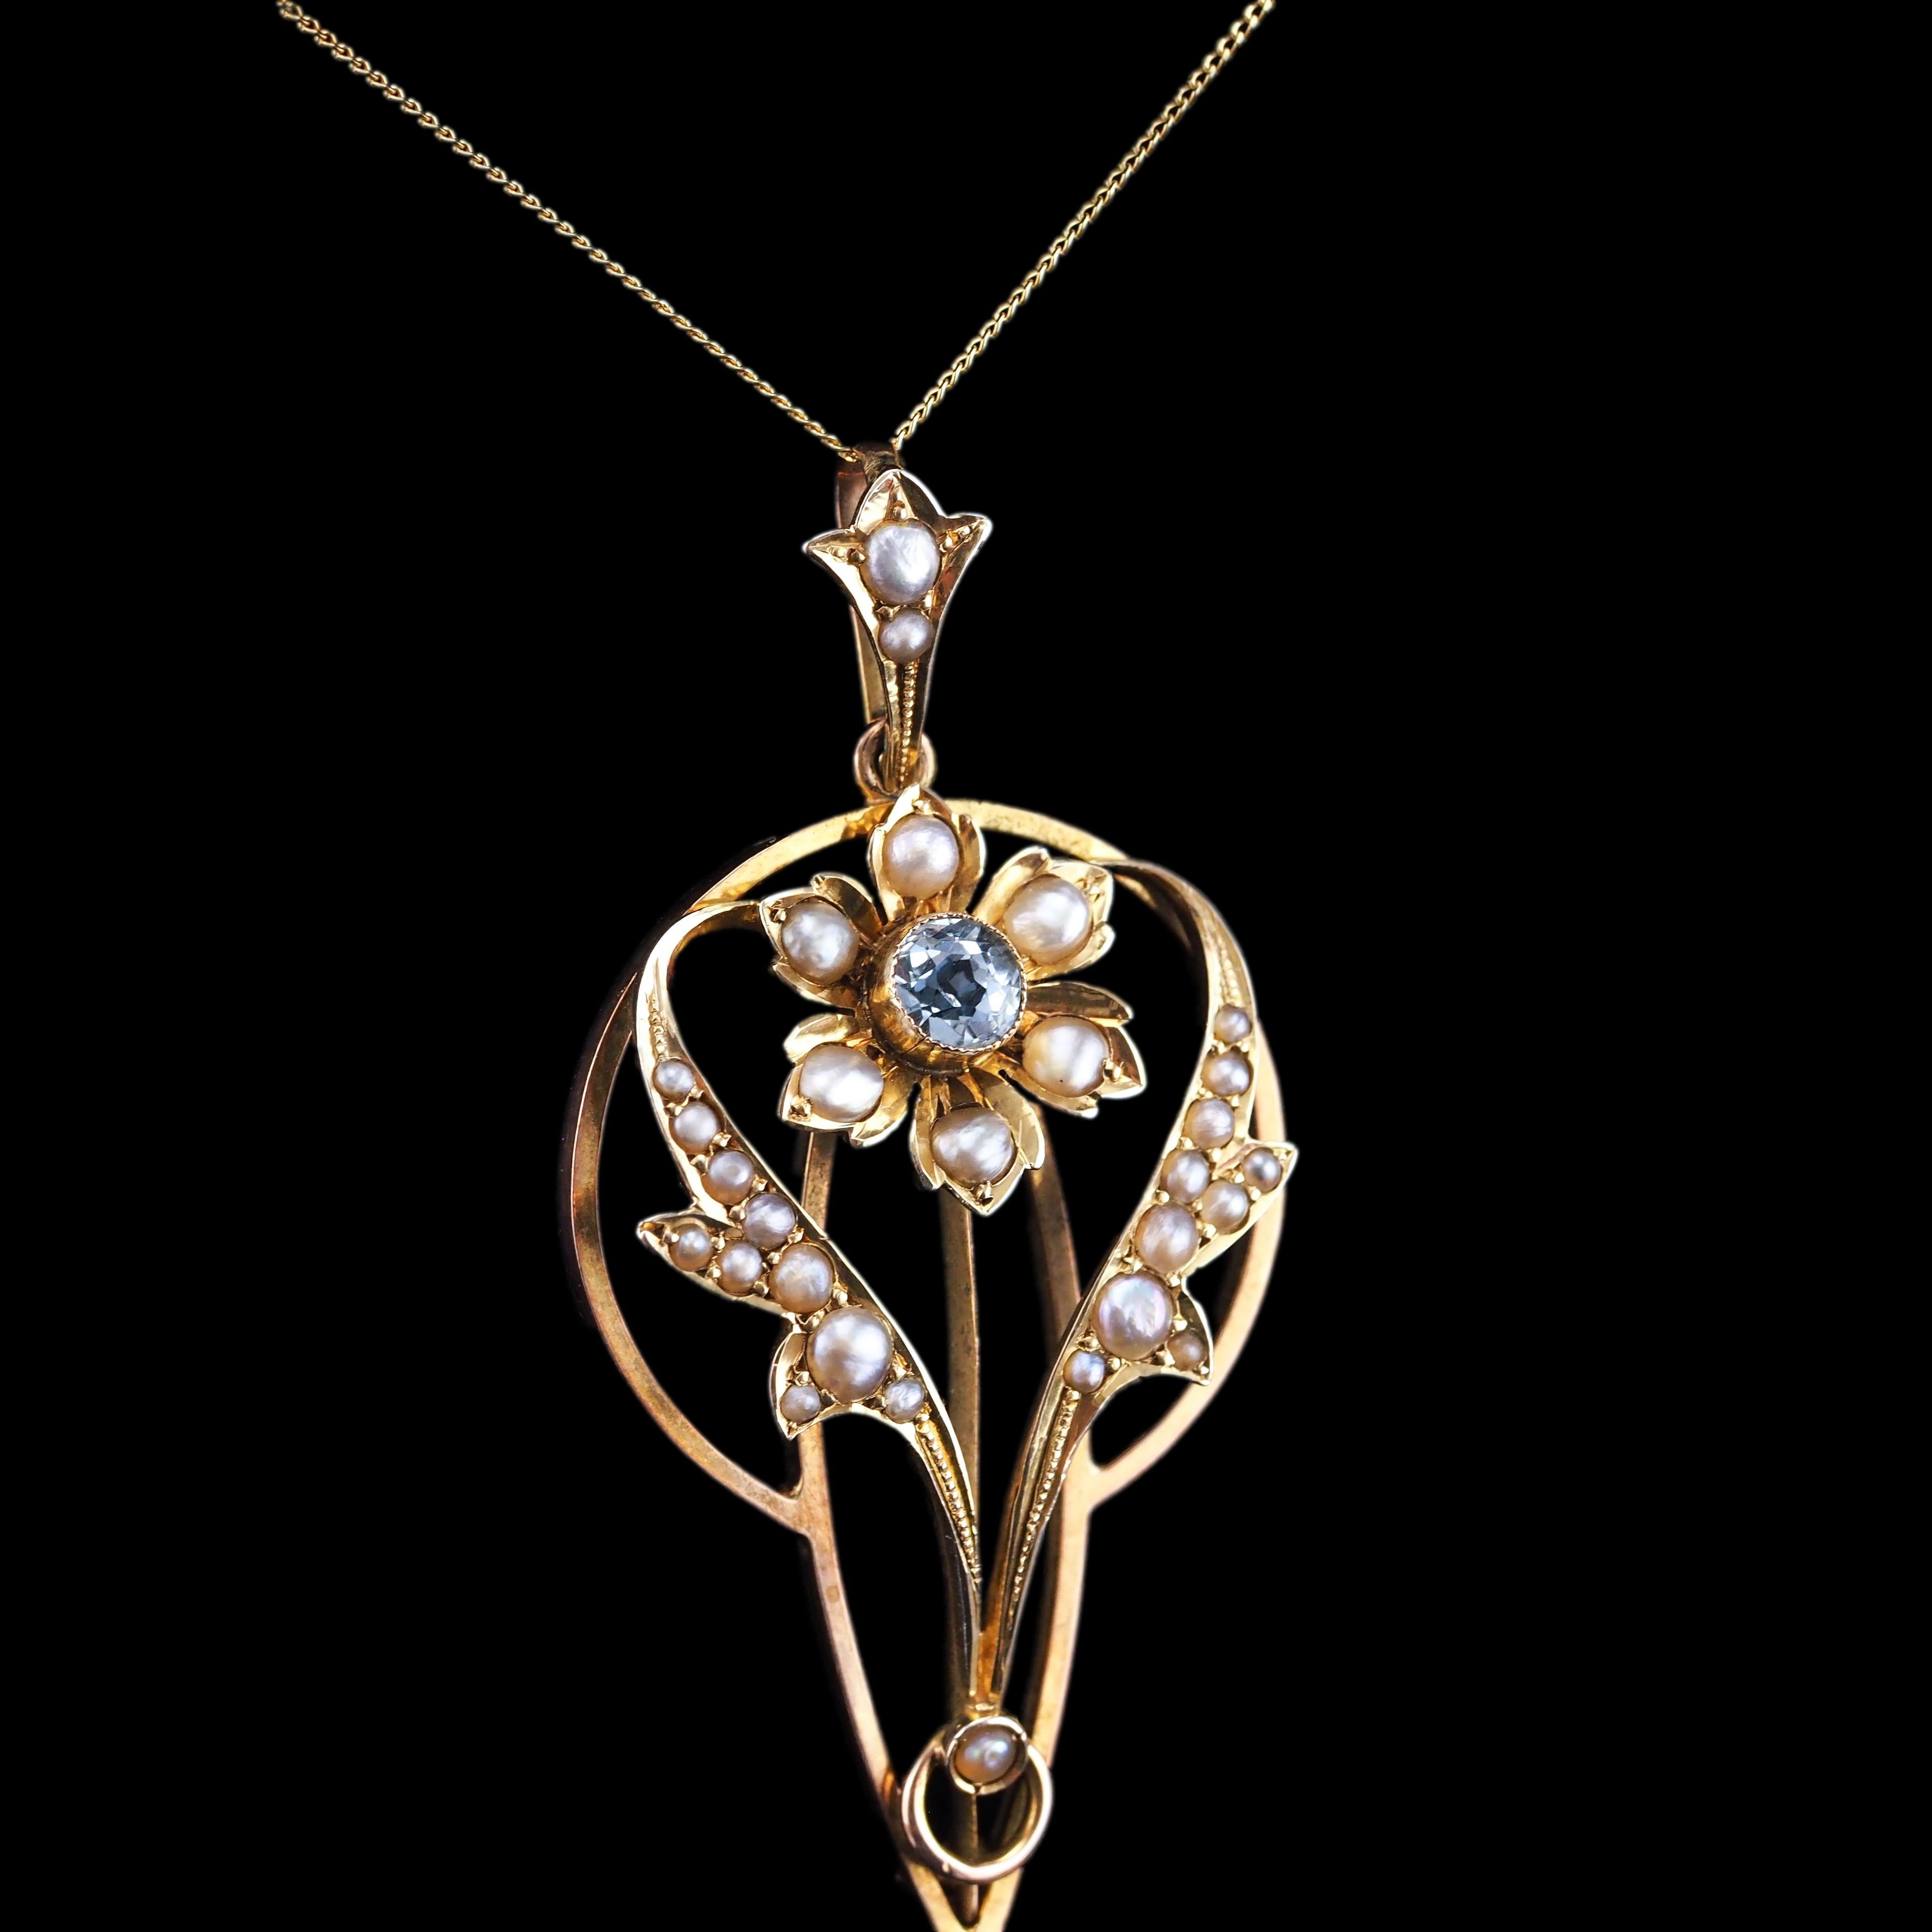 Antique Aquamarine Pendant Necklace Seed Pearls 9K Gold Art Nouveau c.1905 9